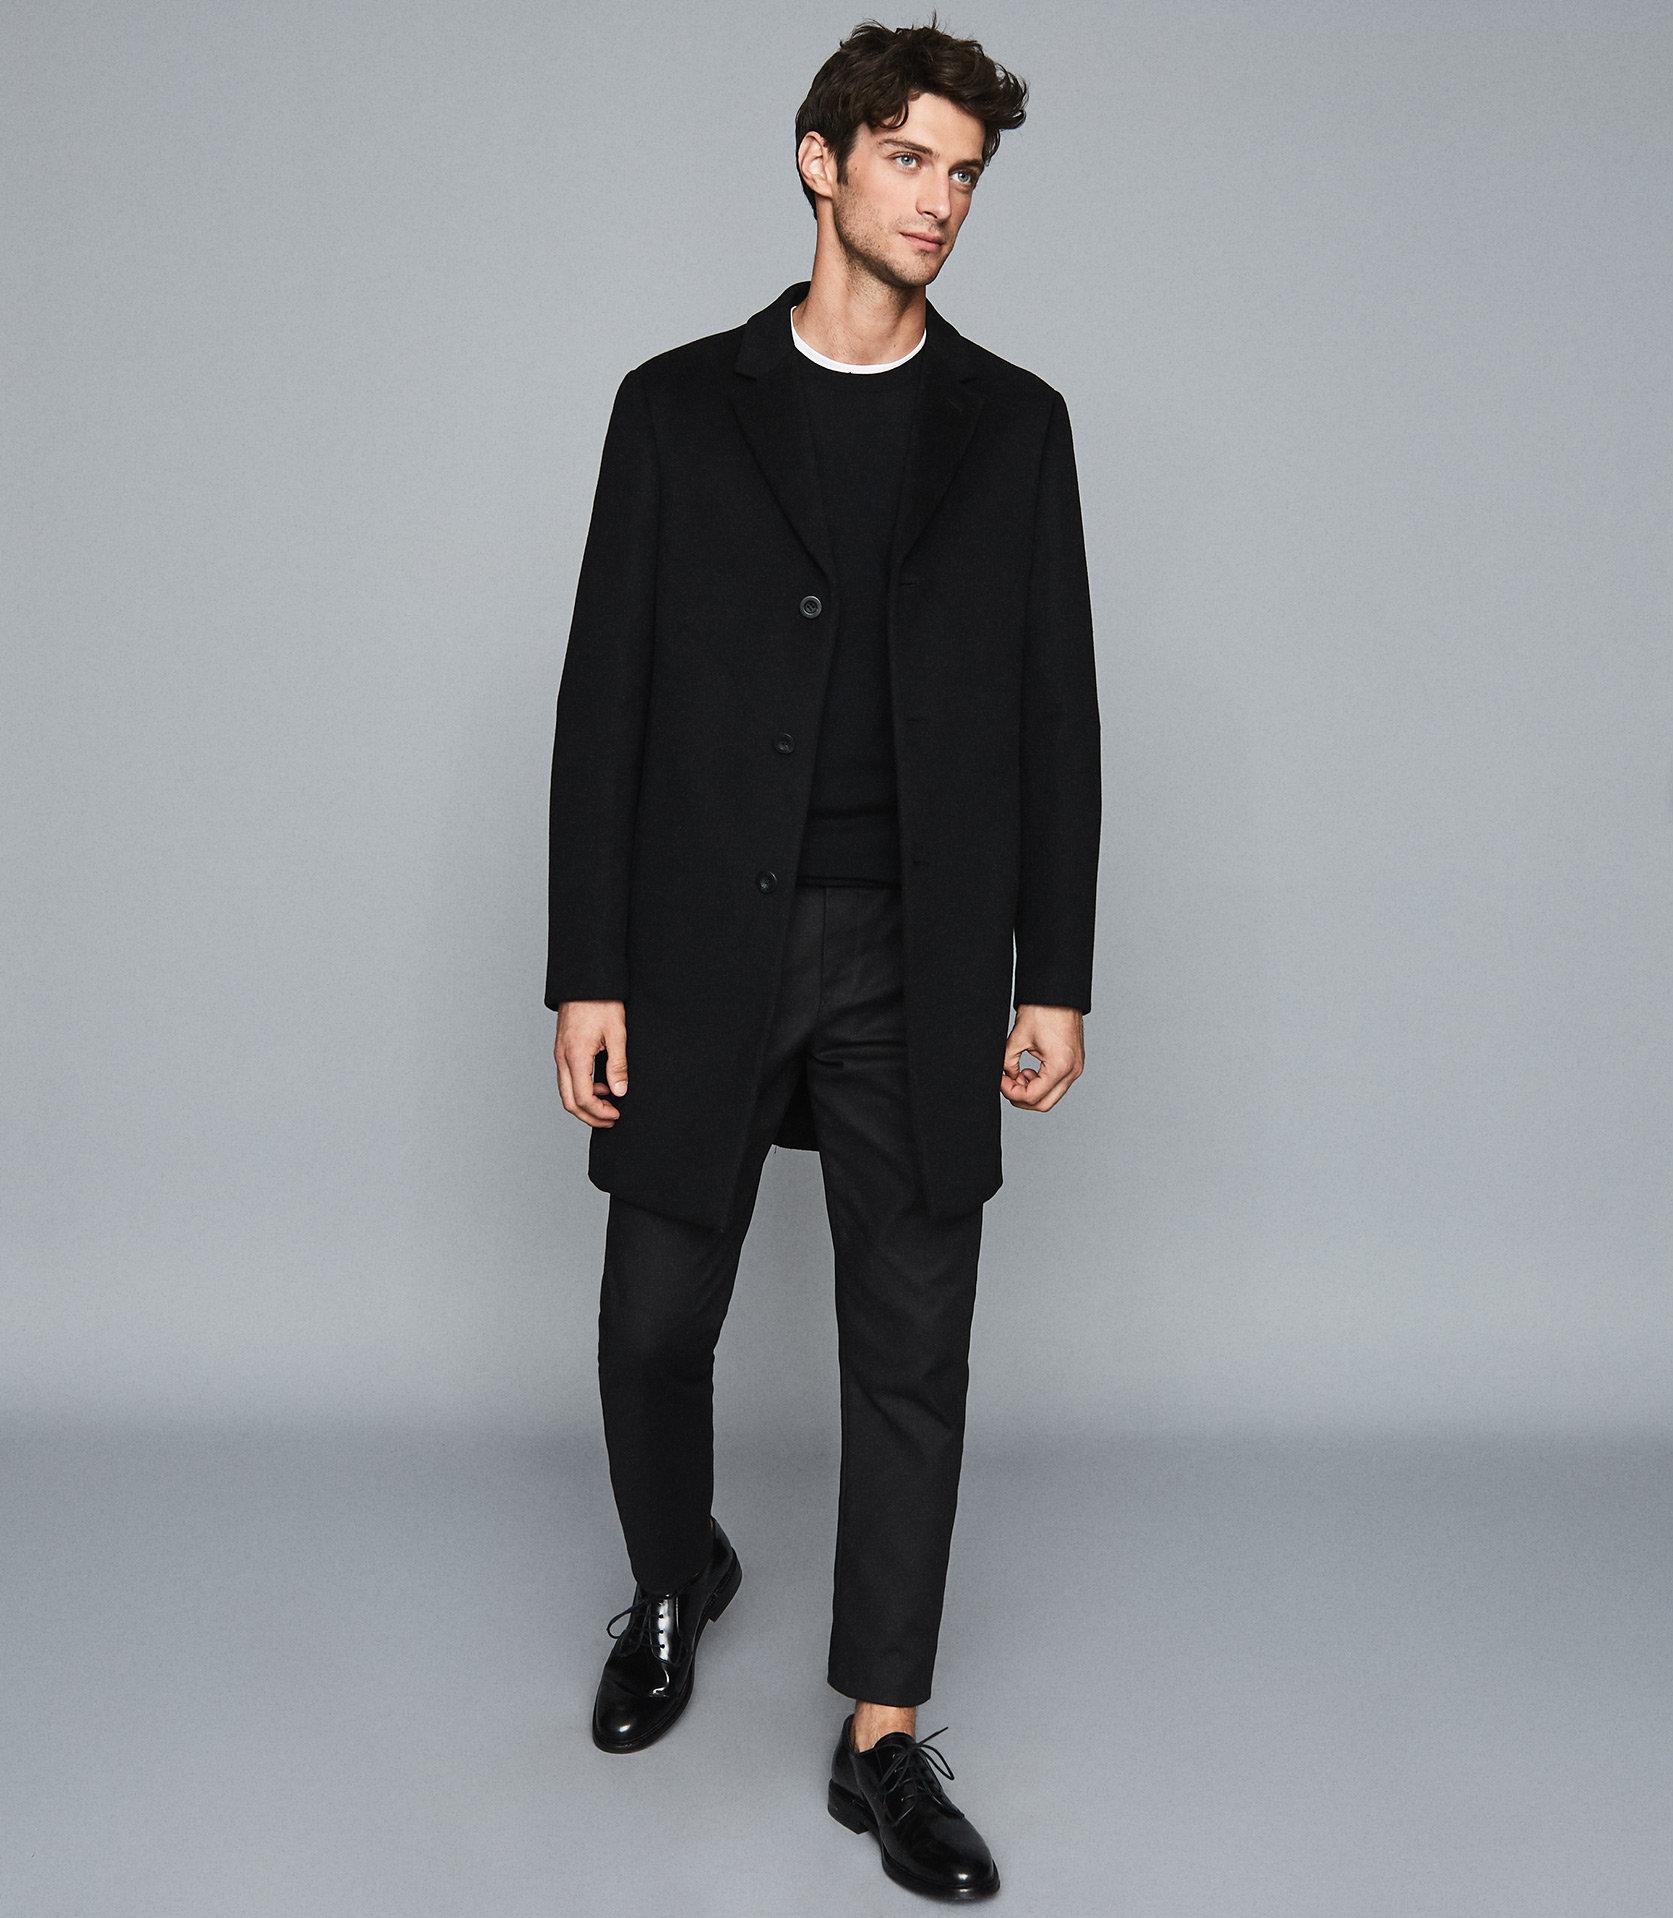 Reiss Wool Epsom Overcoat in Black for Men - Lyst